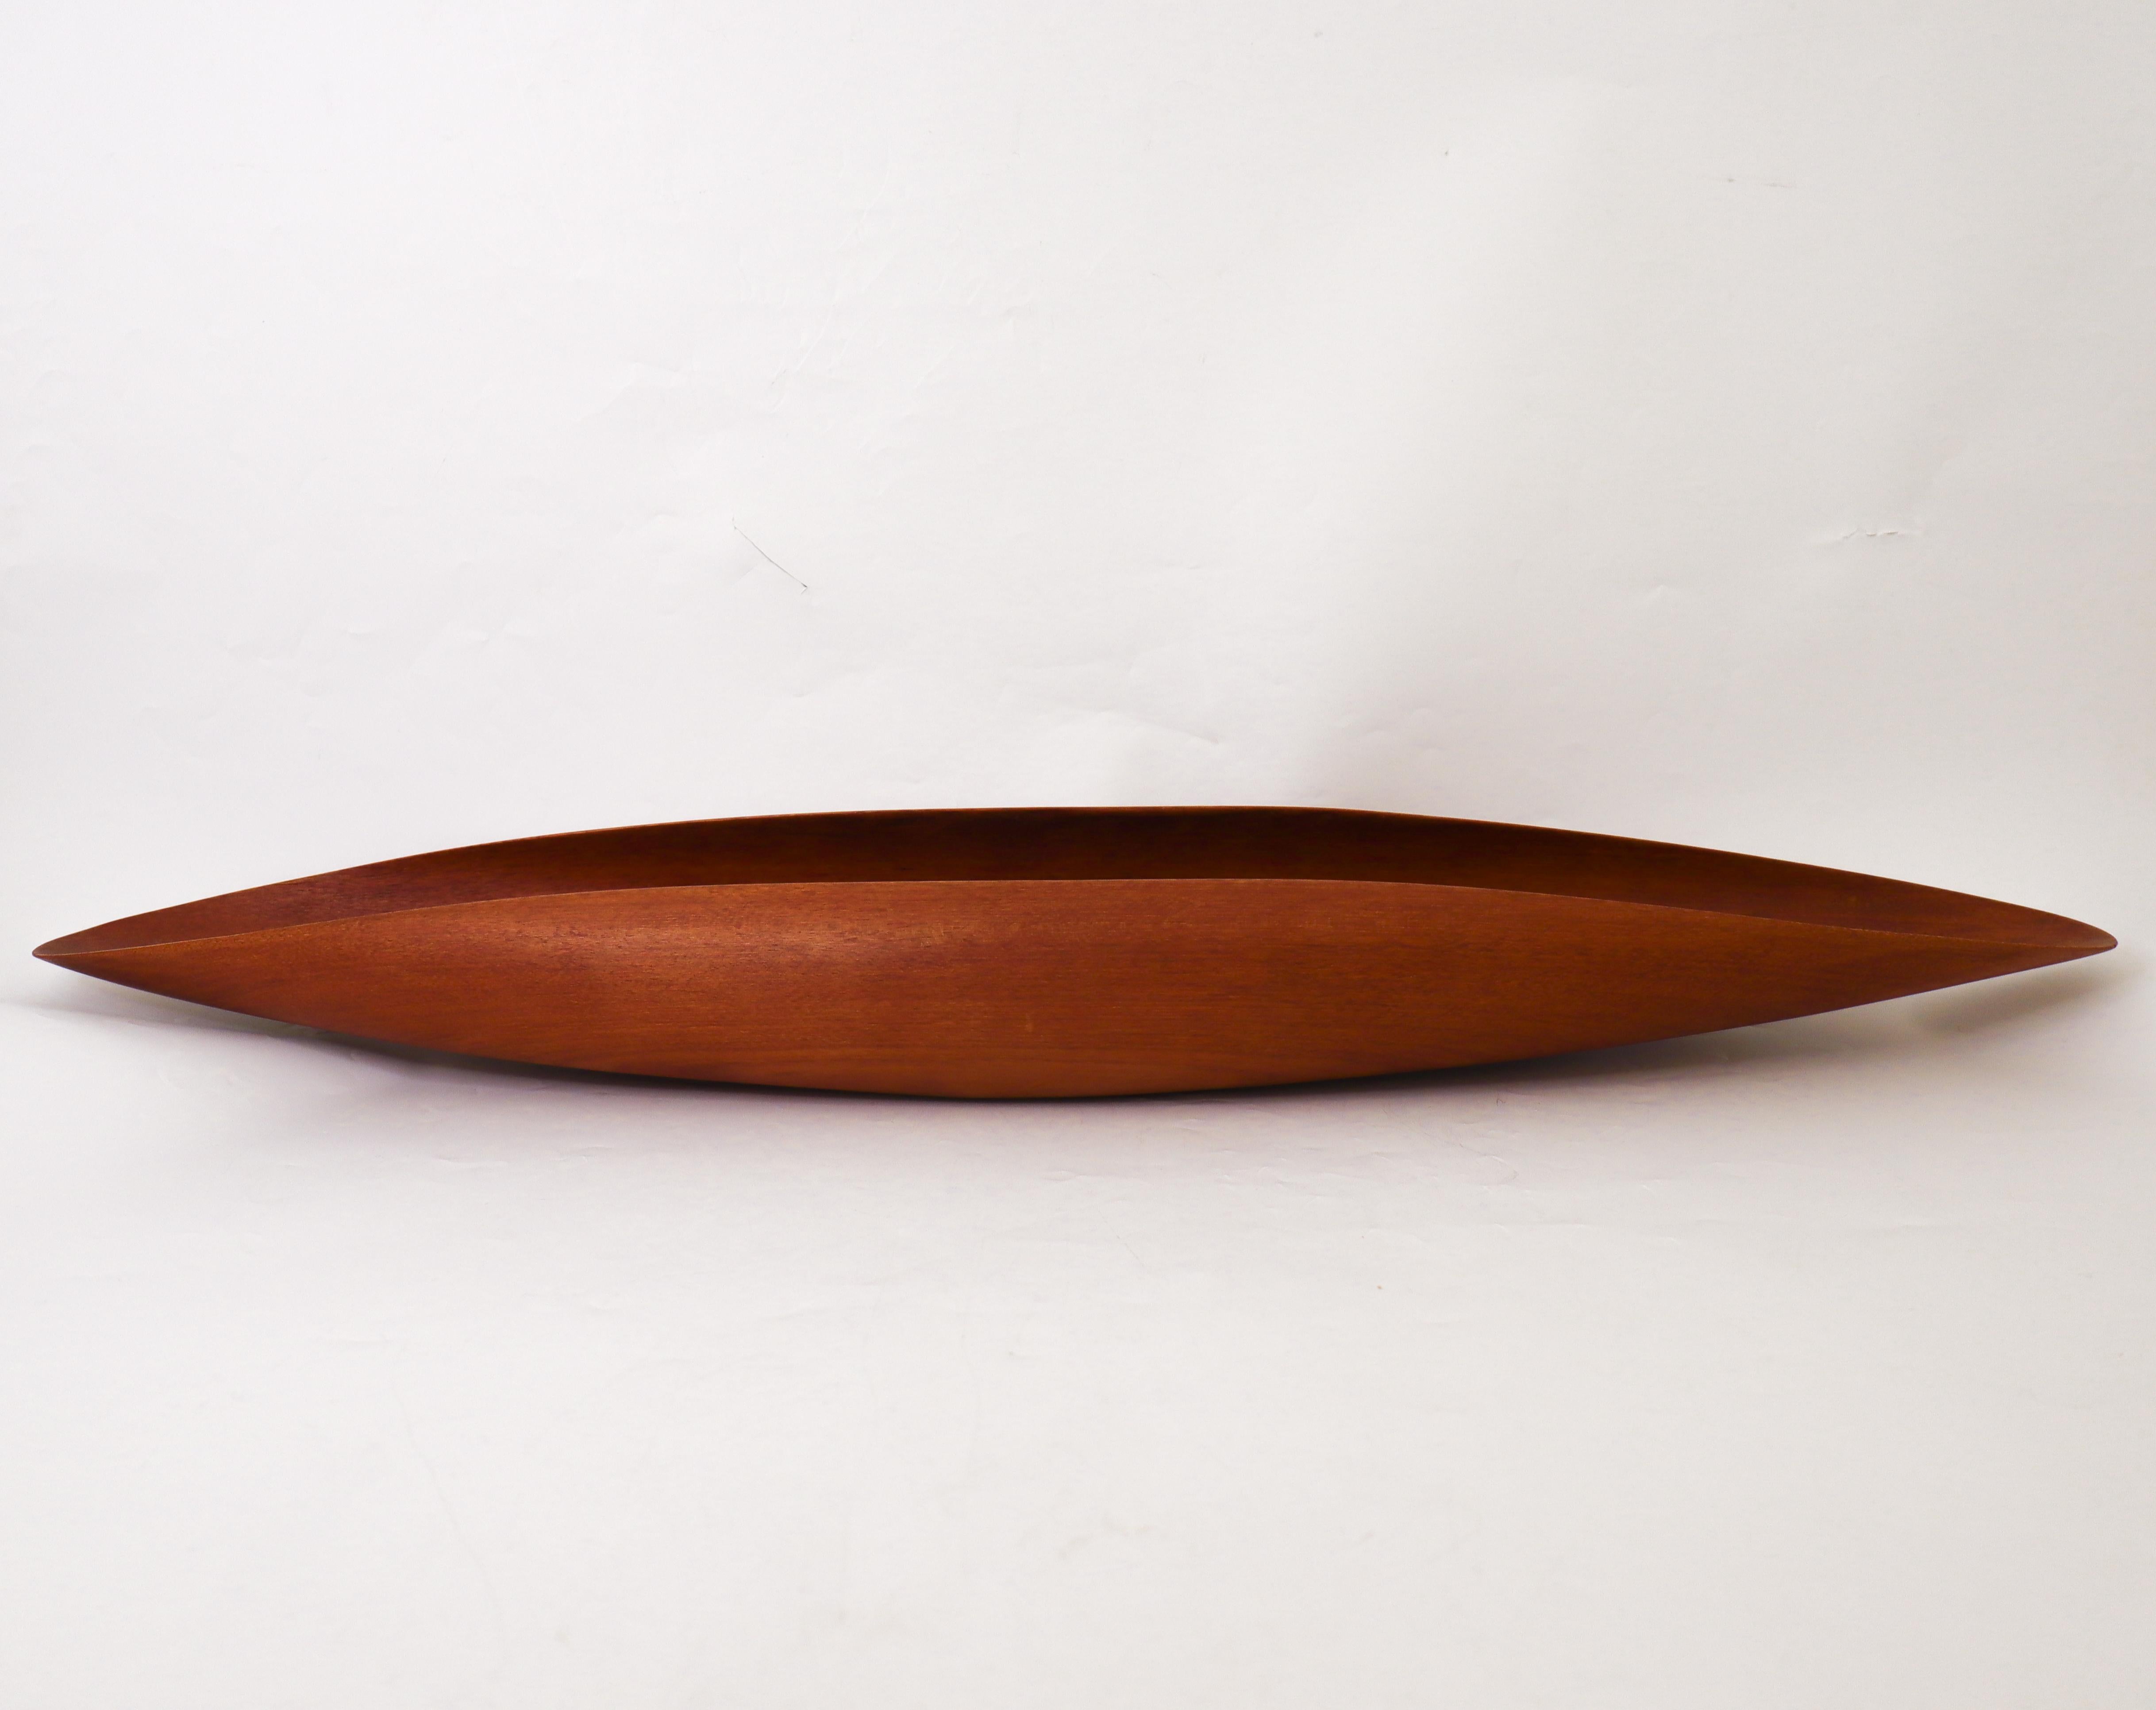 Un beau et grand bol en bois de teck conçu par Johnny Mattsson à Gävle, en Suède. Le bol a un diamètre de 70 cm et une largeur de 13 cm. Il est en très bon état, à l'exception d'une petite fissure dans le bois qui n'est presque pas visible si l'on